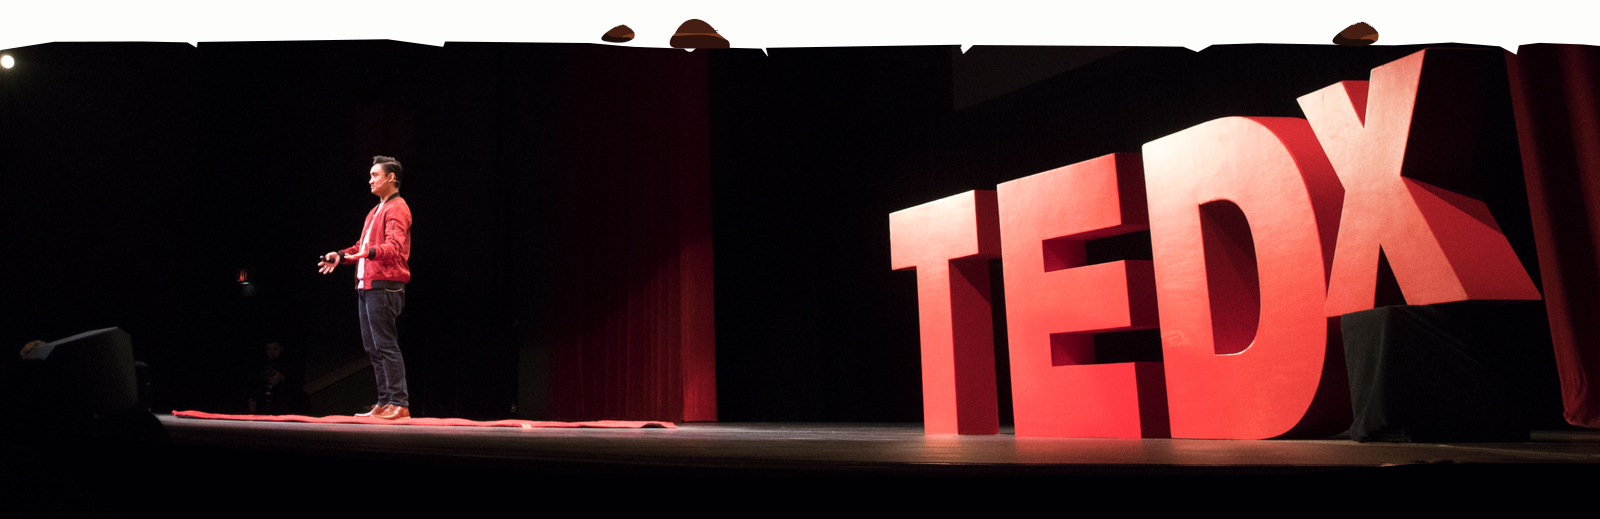 TEDx 2020